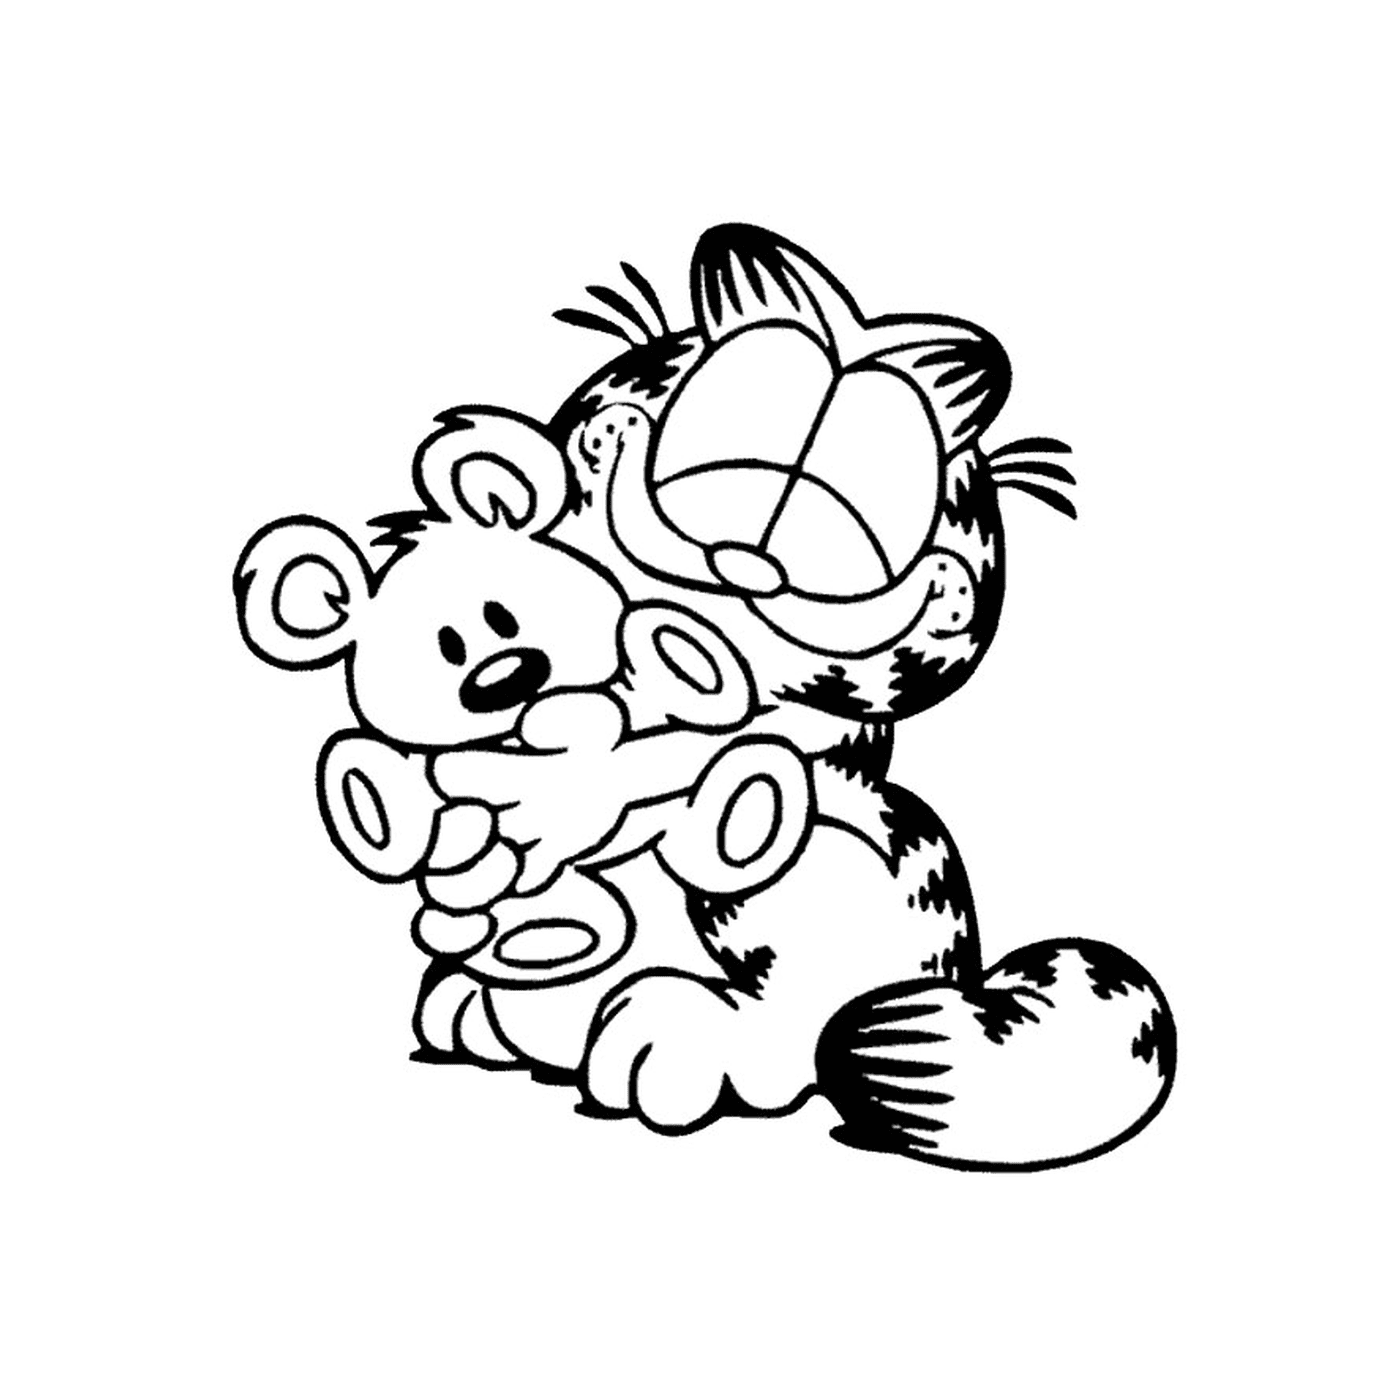  Garfield sosteniendo un osito de peluche 